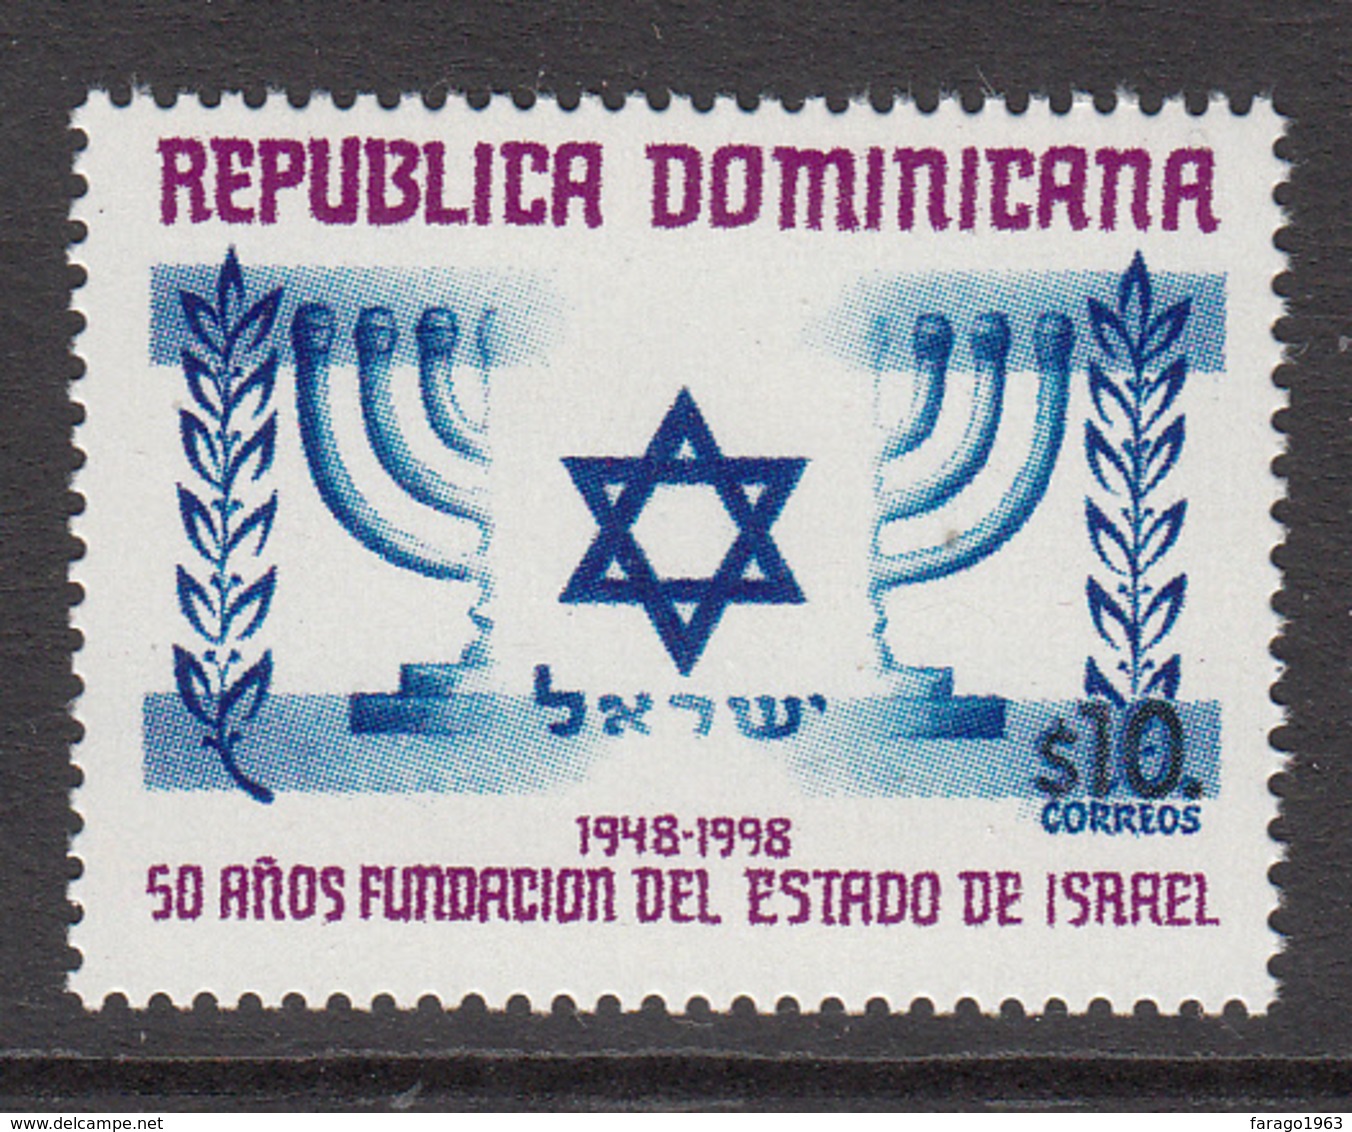 1998 Dominican Republic Dominicana  Israel  Complete Set Of 1 MNH - Dominicaine (République)